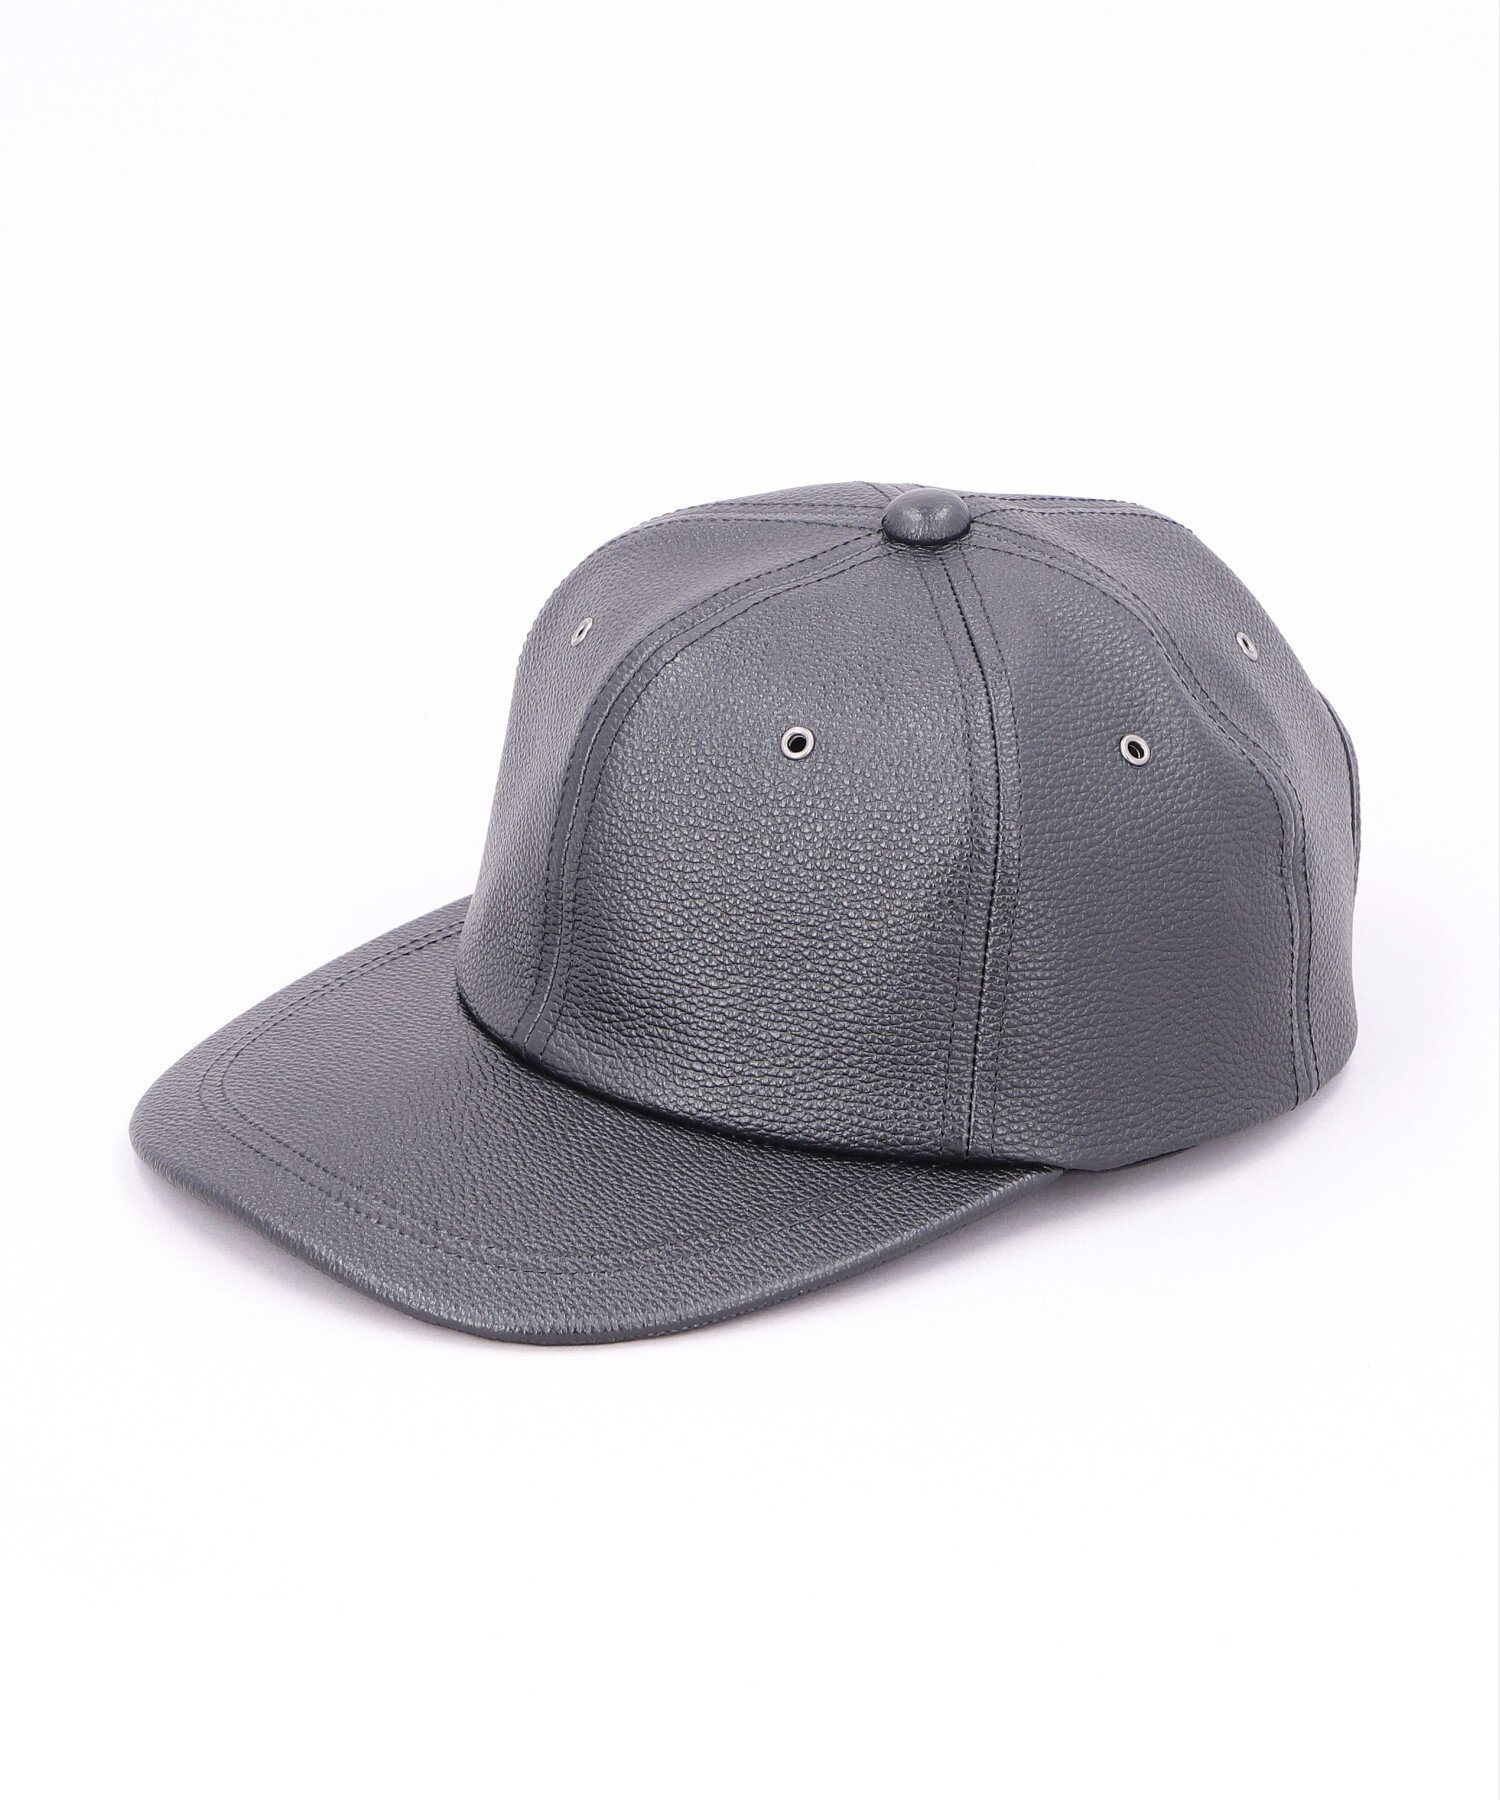 カシラ CA4LA MK COW LEATHER CAP カシラ 帽子 キャップ ブラック ベージュ【送料無料】